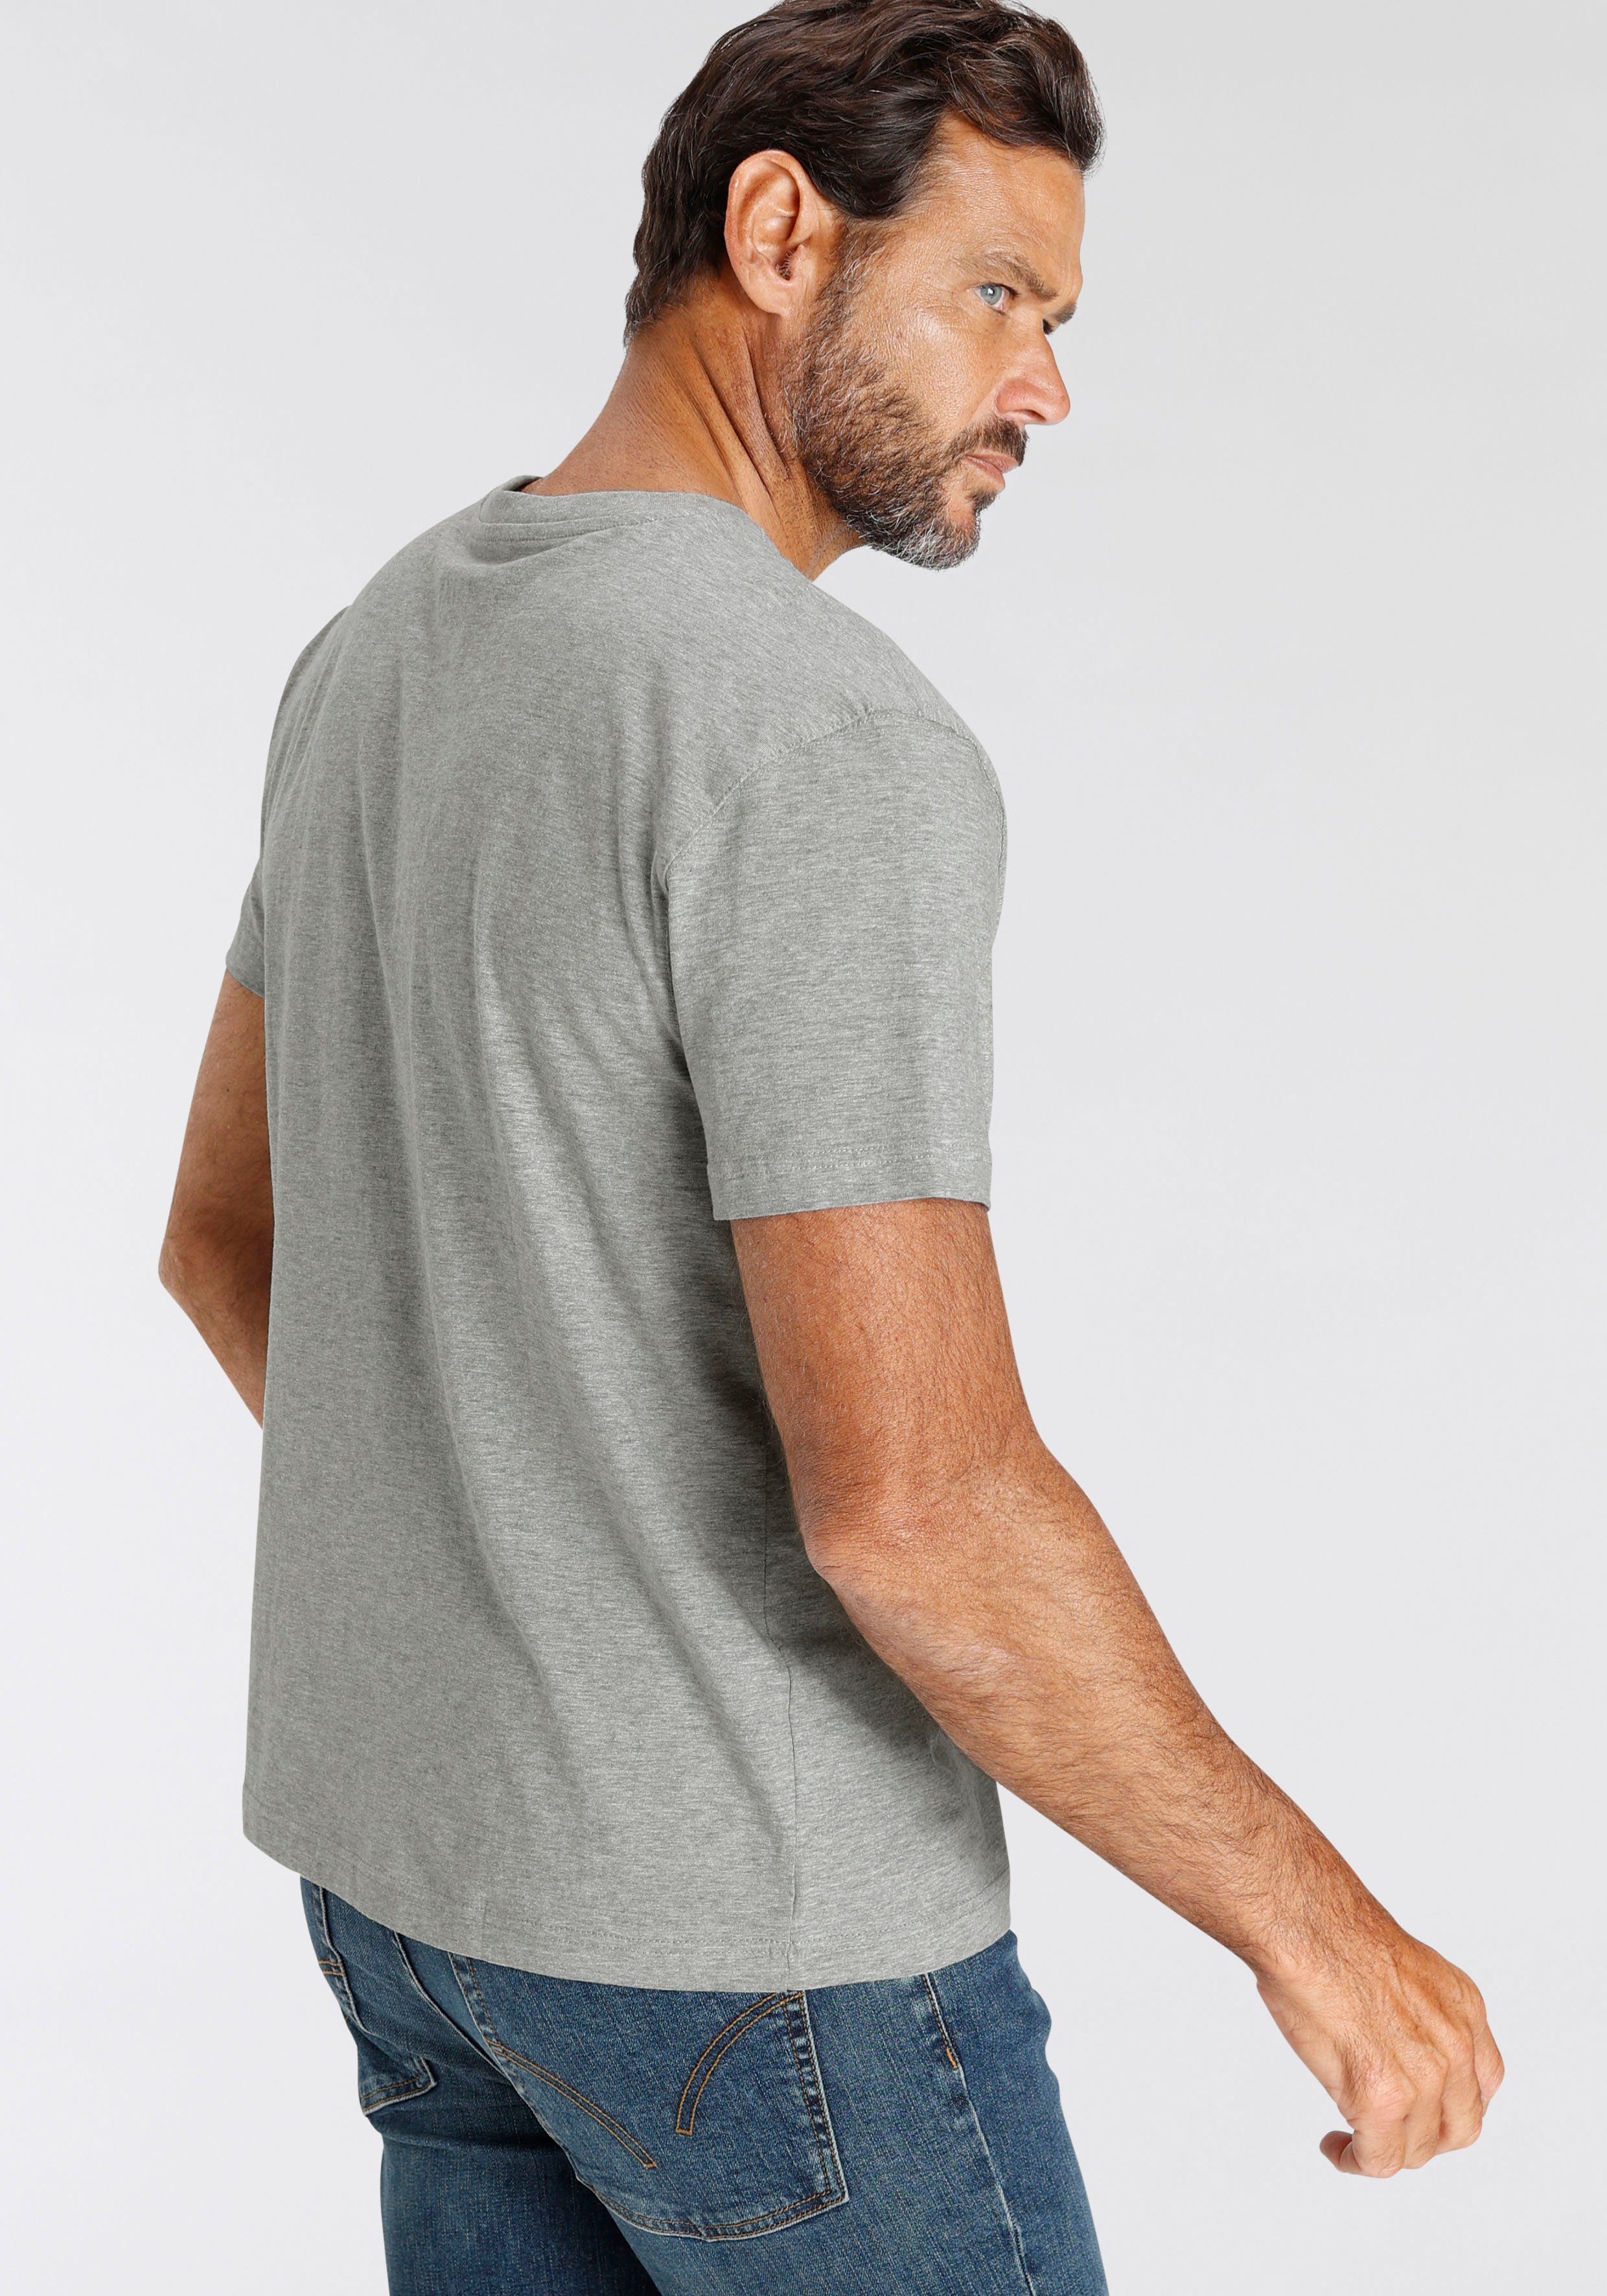 Man's World T-Shirt (Packung, weiss-grau-mel.-schwarz 3-tlg., 3er-Pack) perfekt Unterzieh- als T-shirt